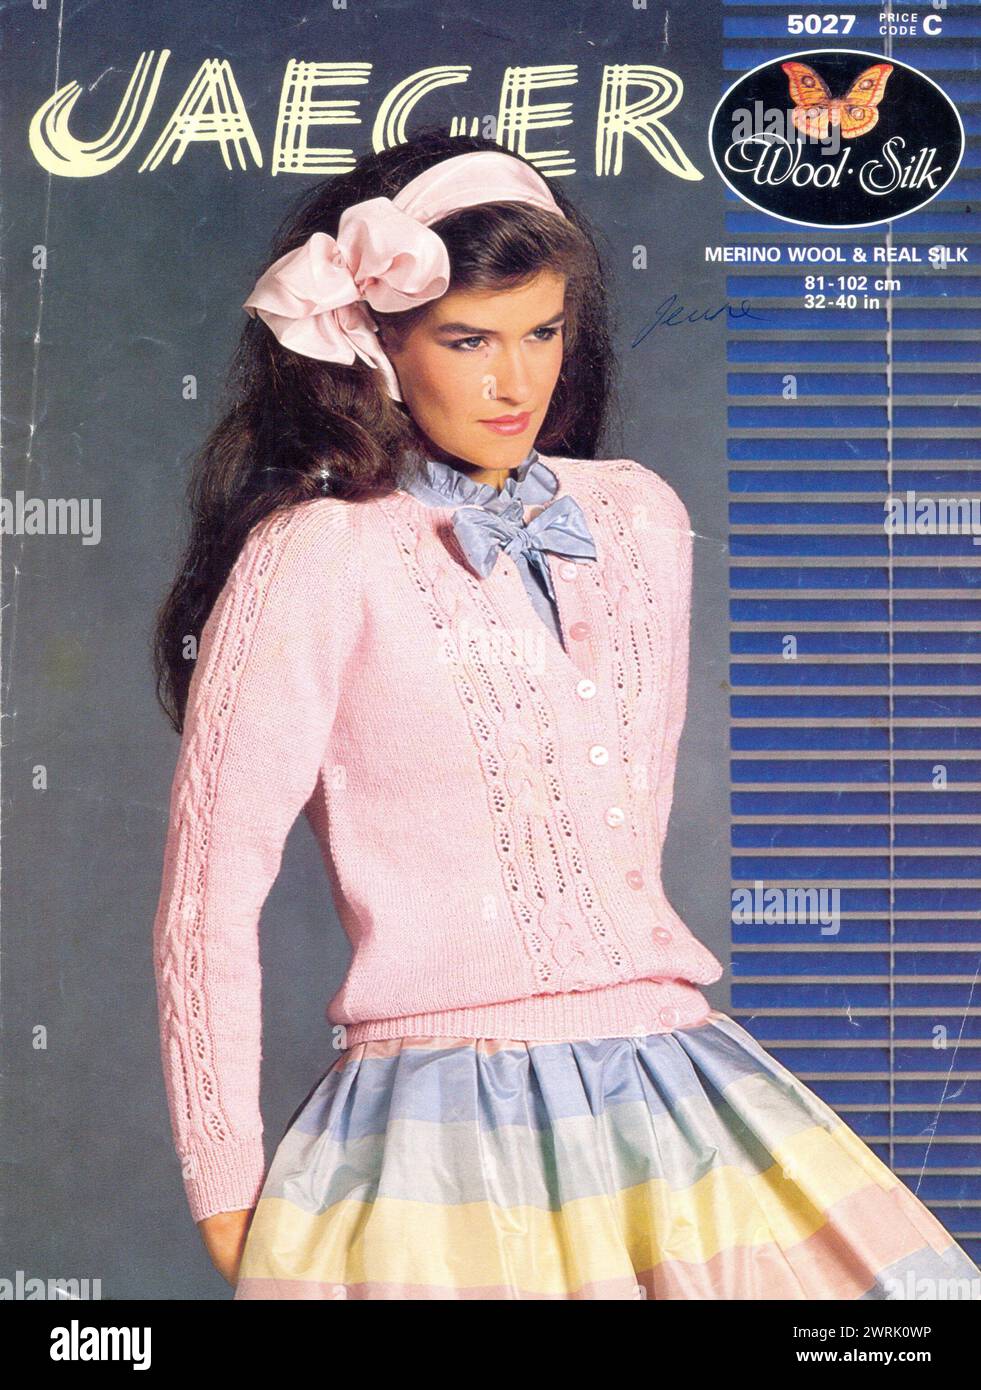 Motivo a maglia Jaeger per cardigan da donna 1983 Foto Stock